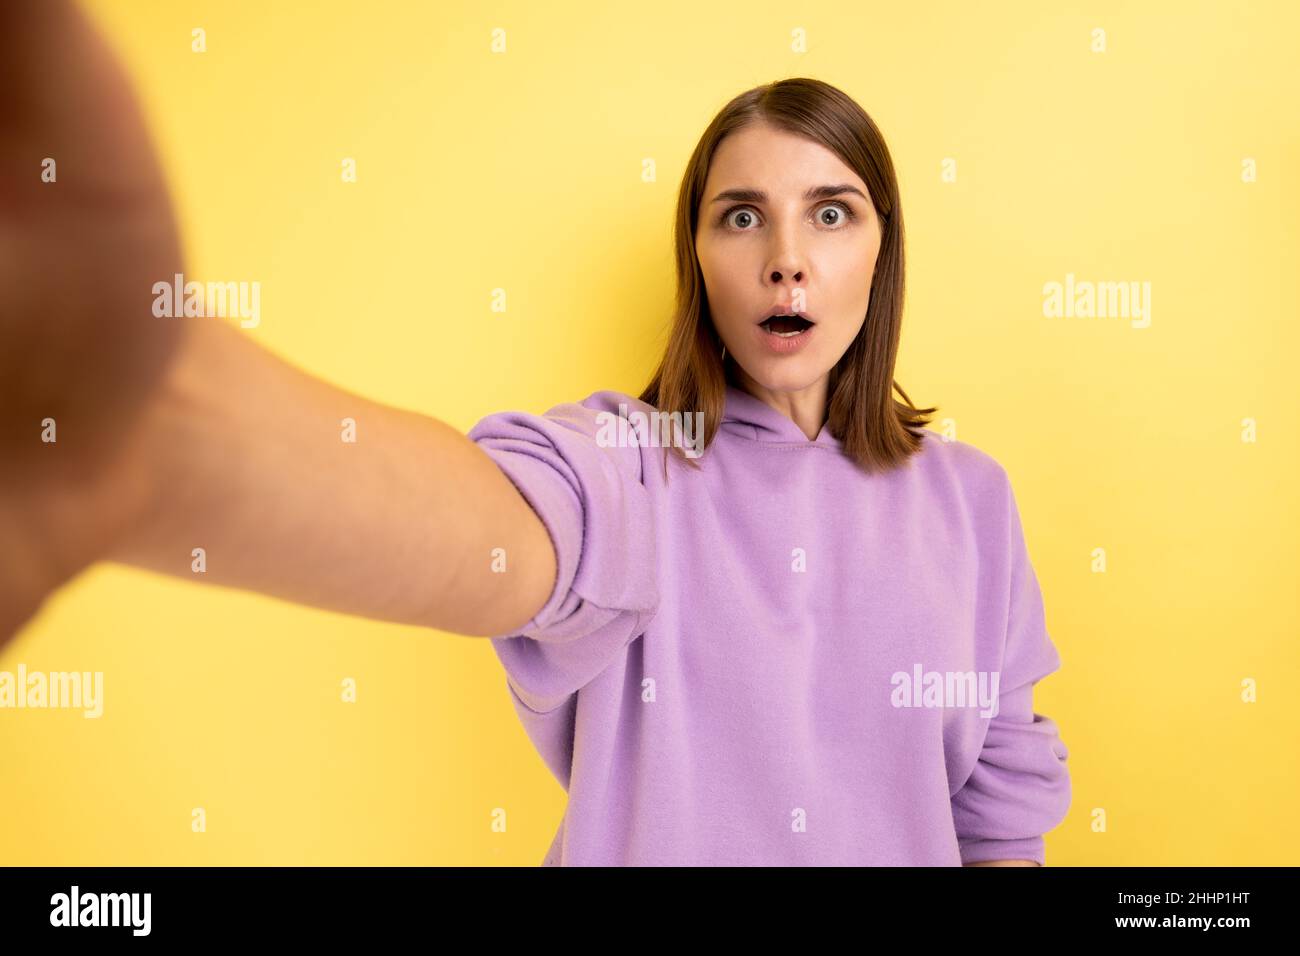 Ritratto di donna sorpresa prendendo selfie con espressione facciale scioccata, guardando con occhi grandi e bocca aperta, POV, indossando felpa con cappuccio viola. Studio interno girato isolato su sfondo giallo. Foto Stock